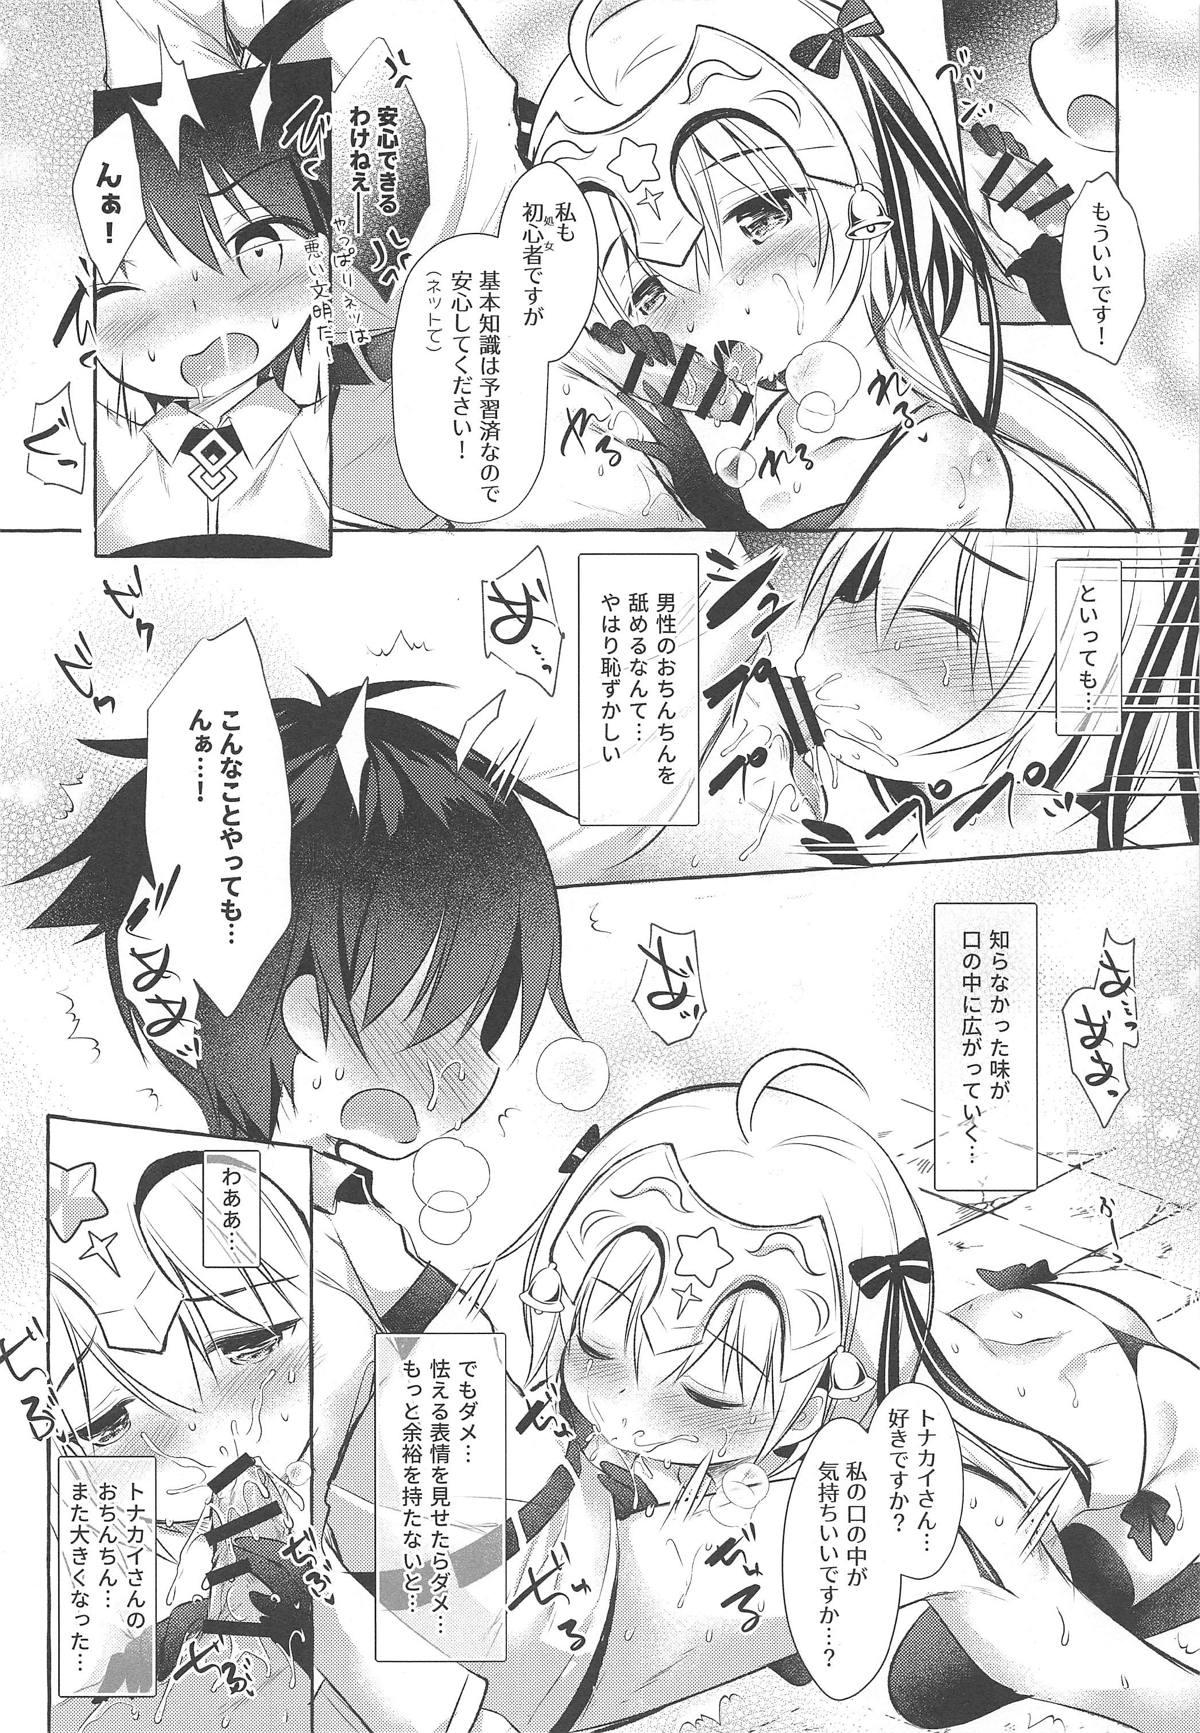 8teenxxx Tonakai-san no ○○ wa Watashi ga Mamoru! - Fate grand order Macho - Page 11